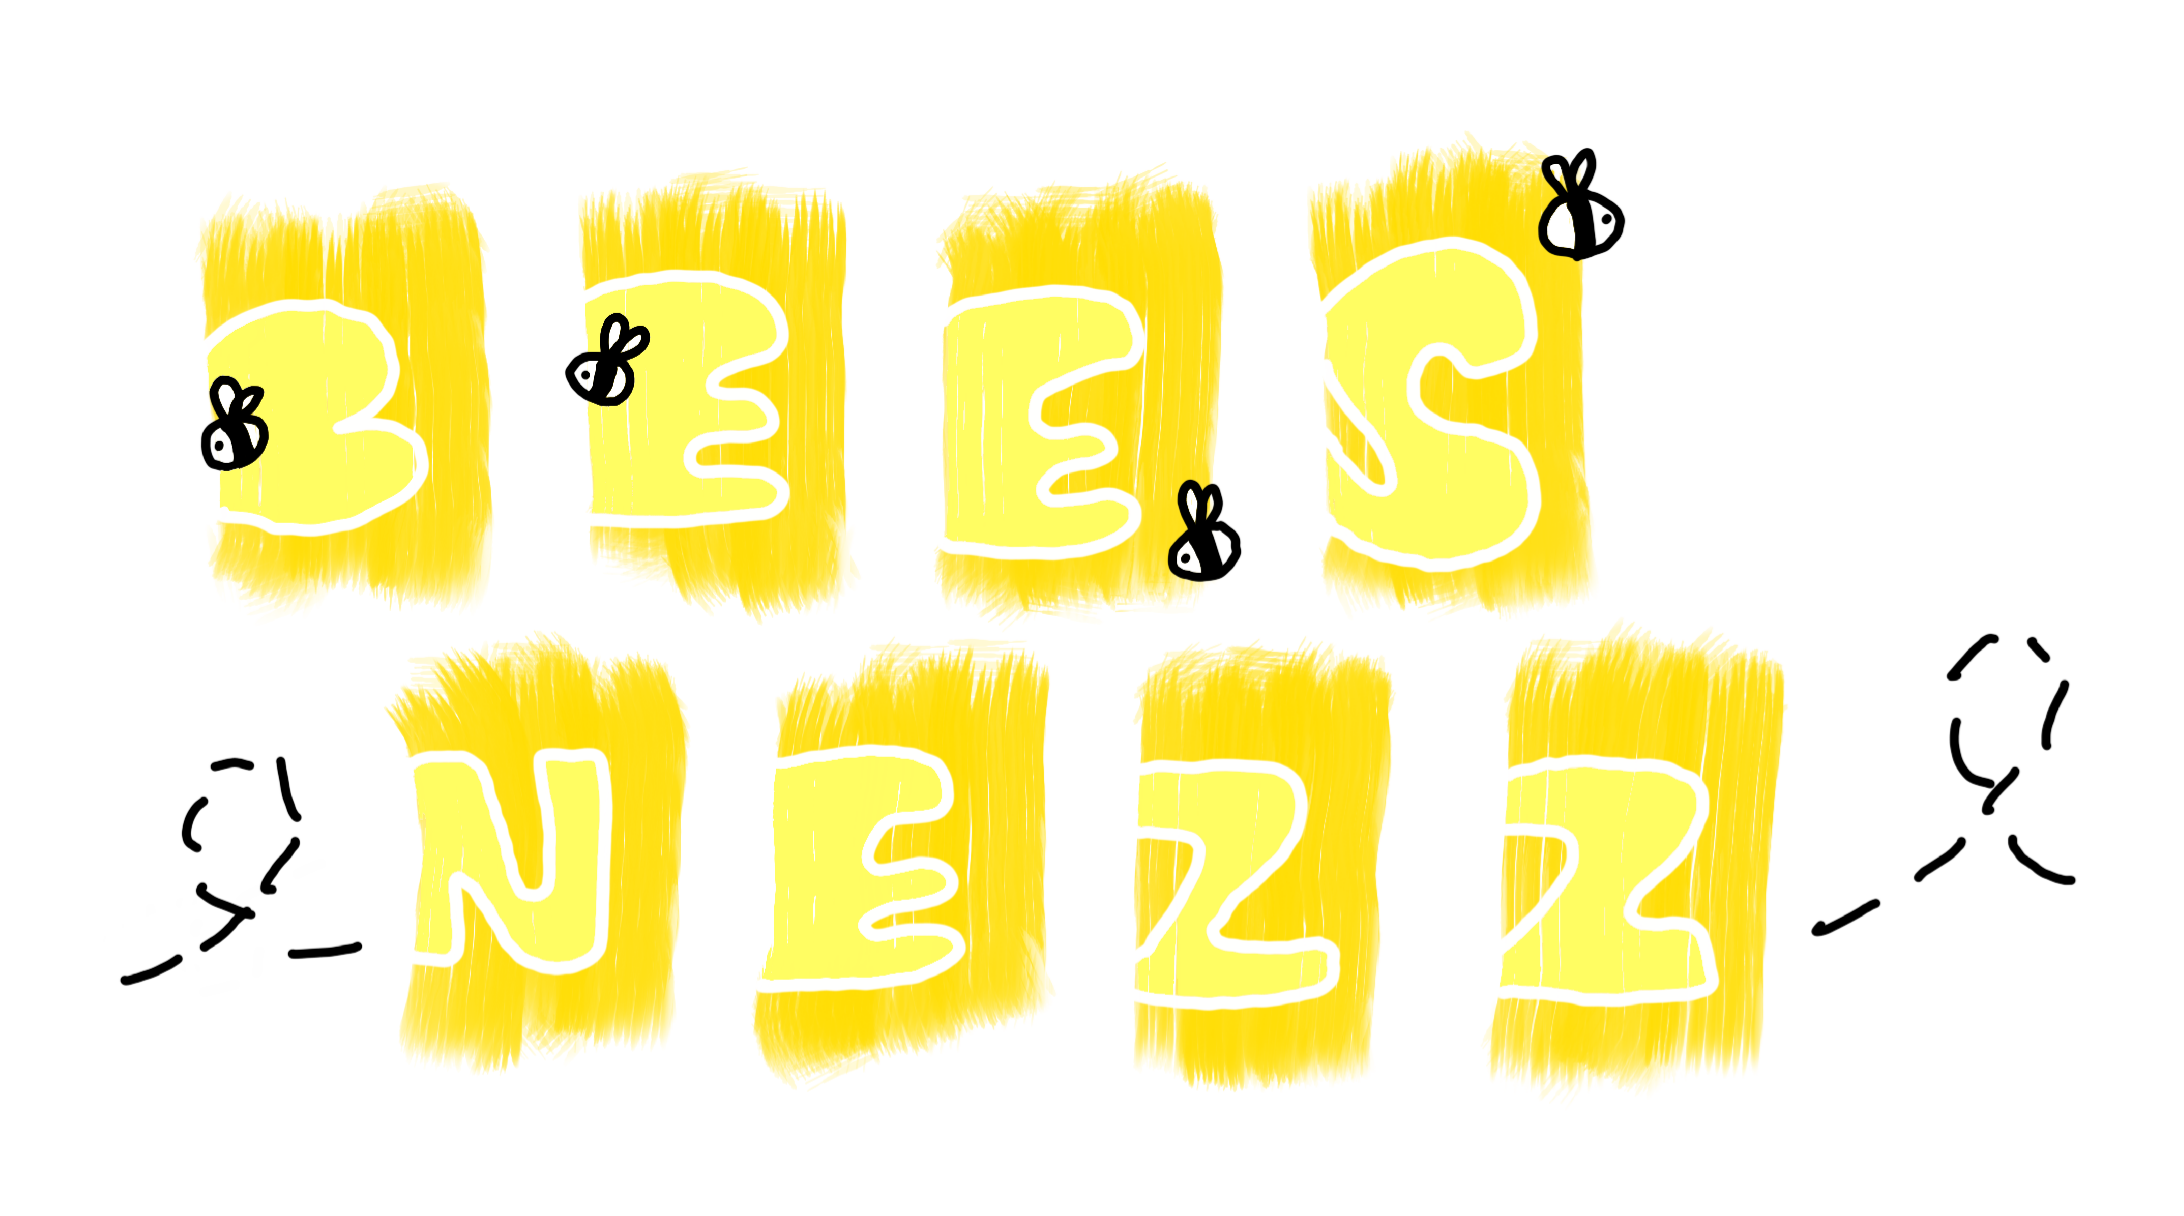 BEESNEZZ Logo